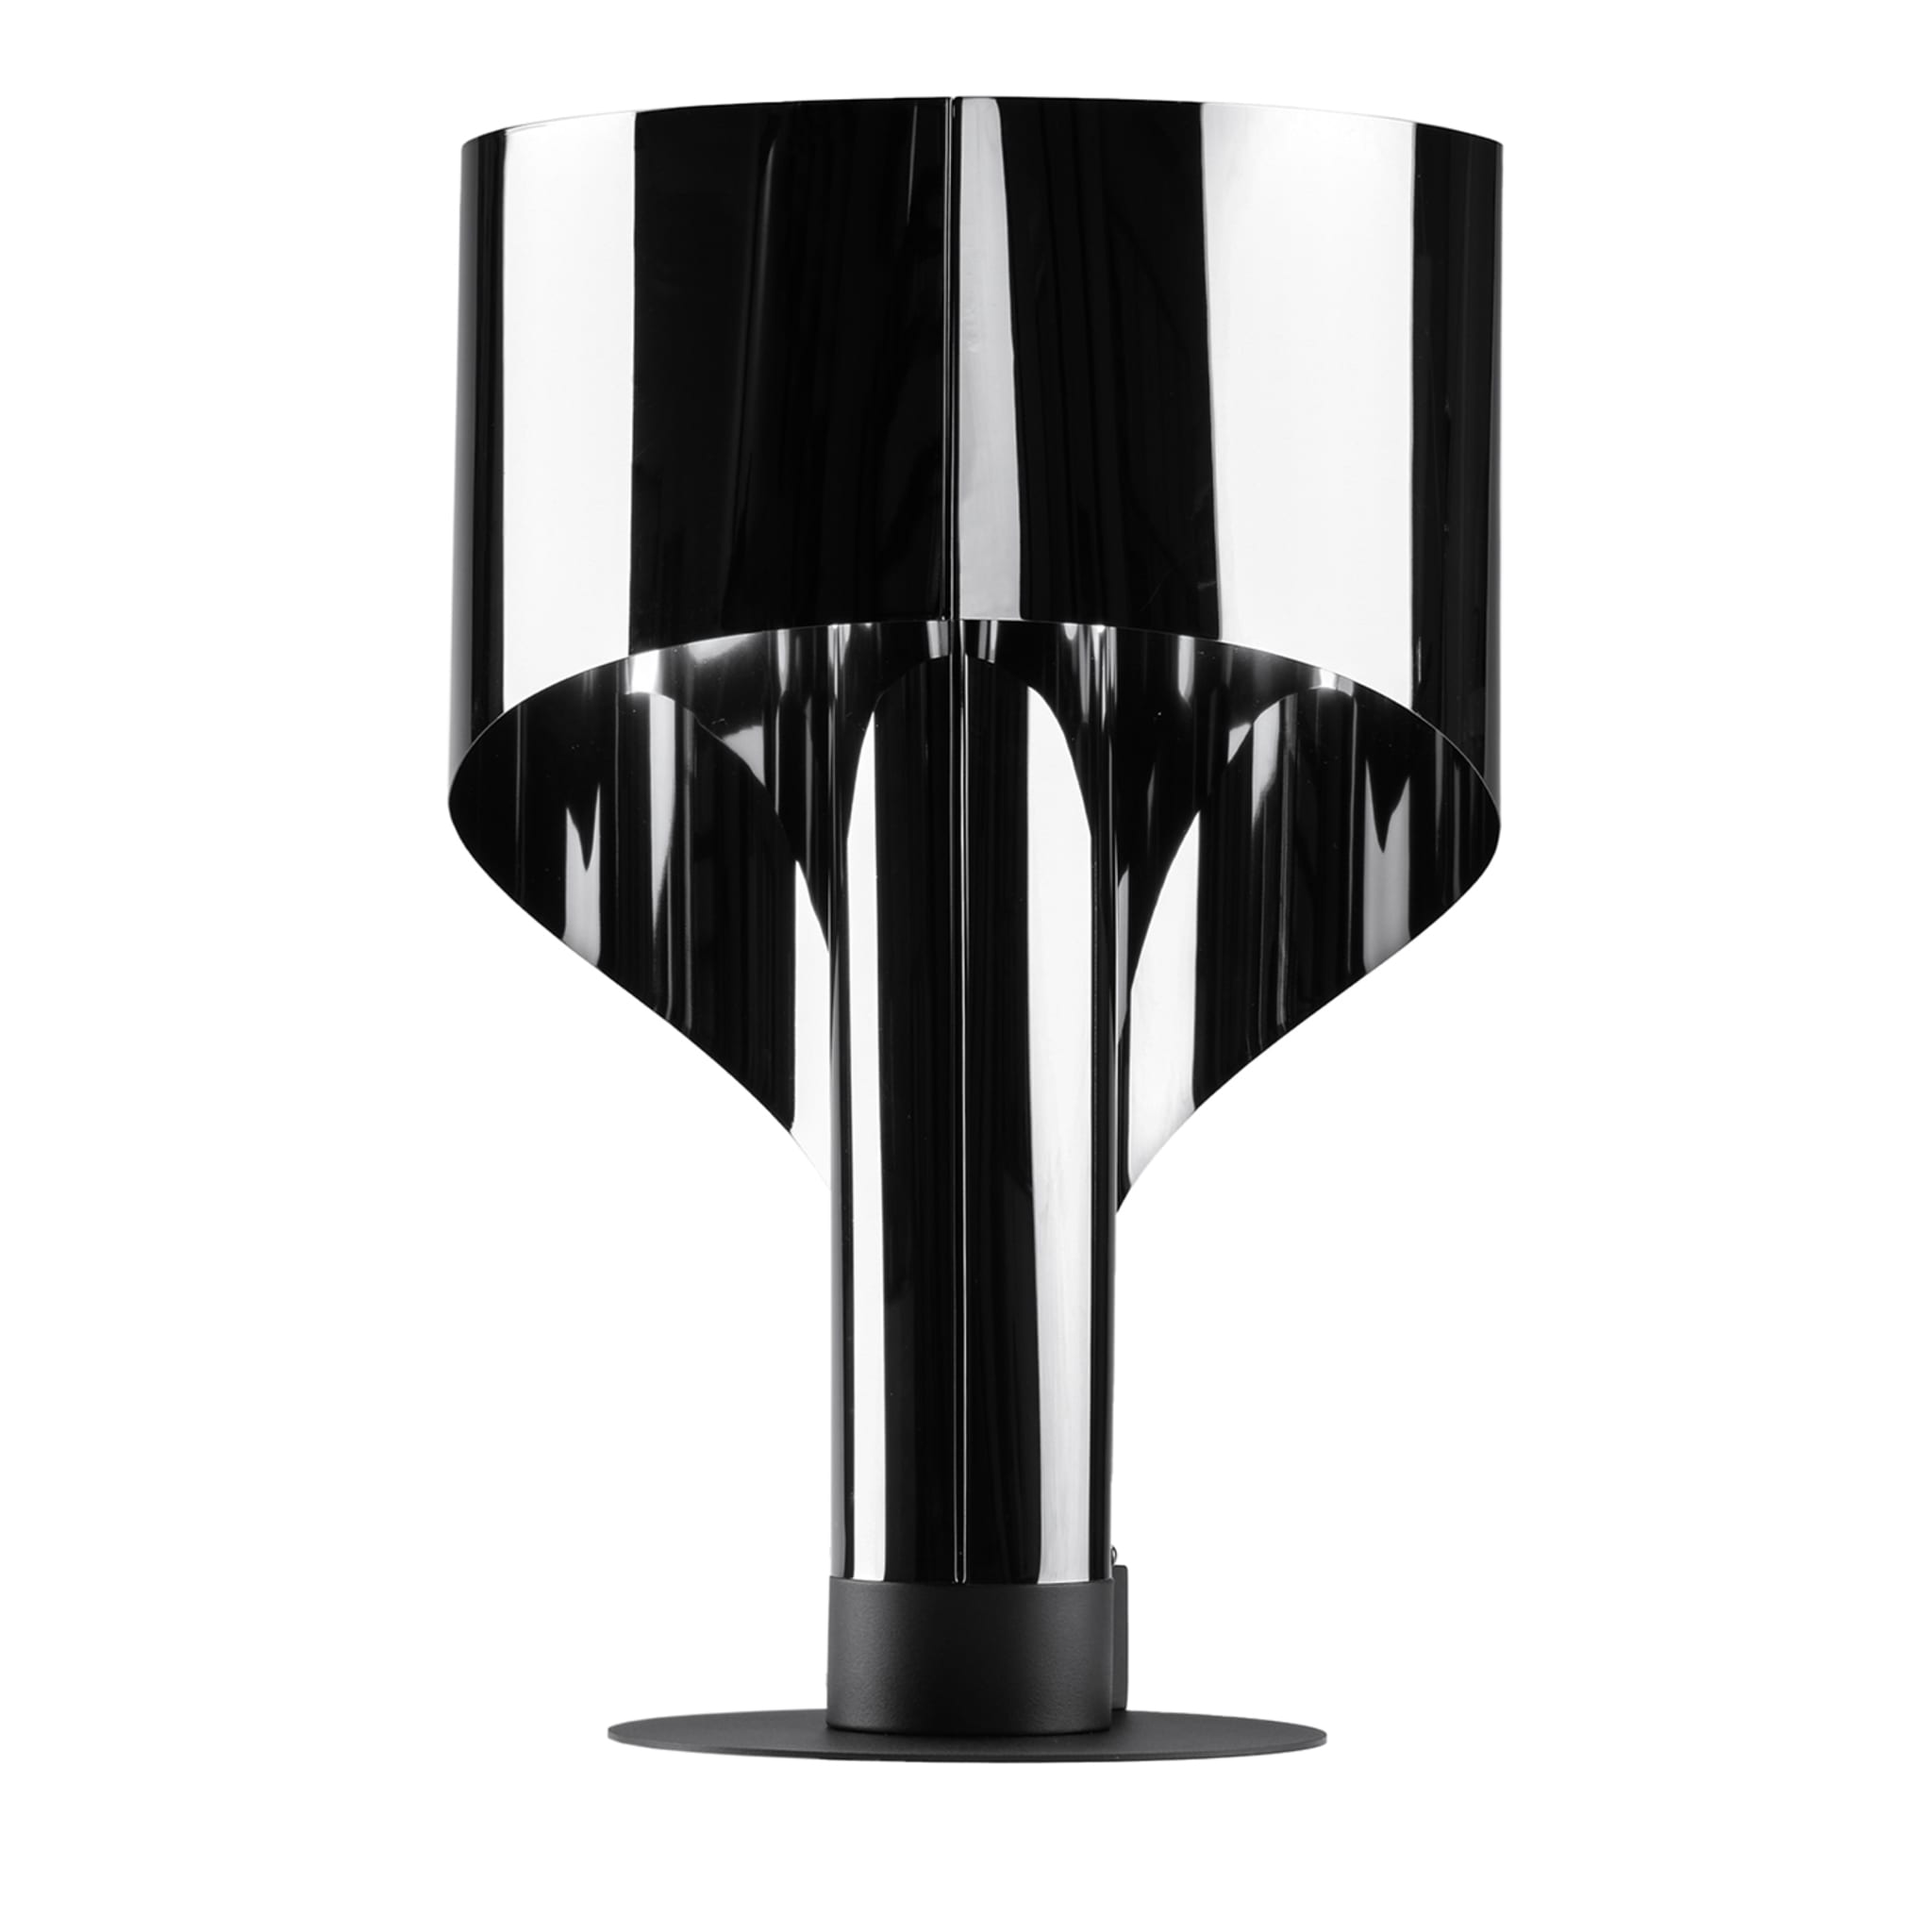  SPINNAKER lampe de table noire de Corsini Wiskemann - Vue principale